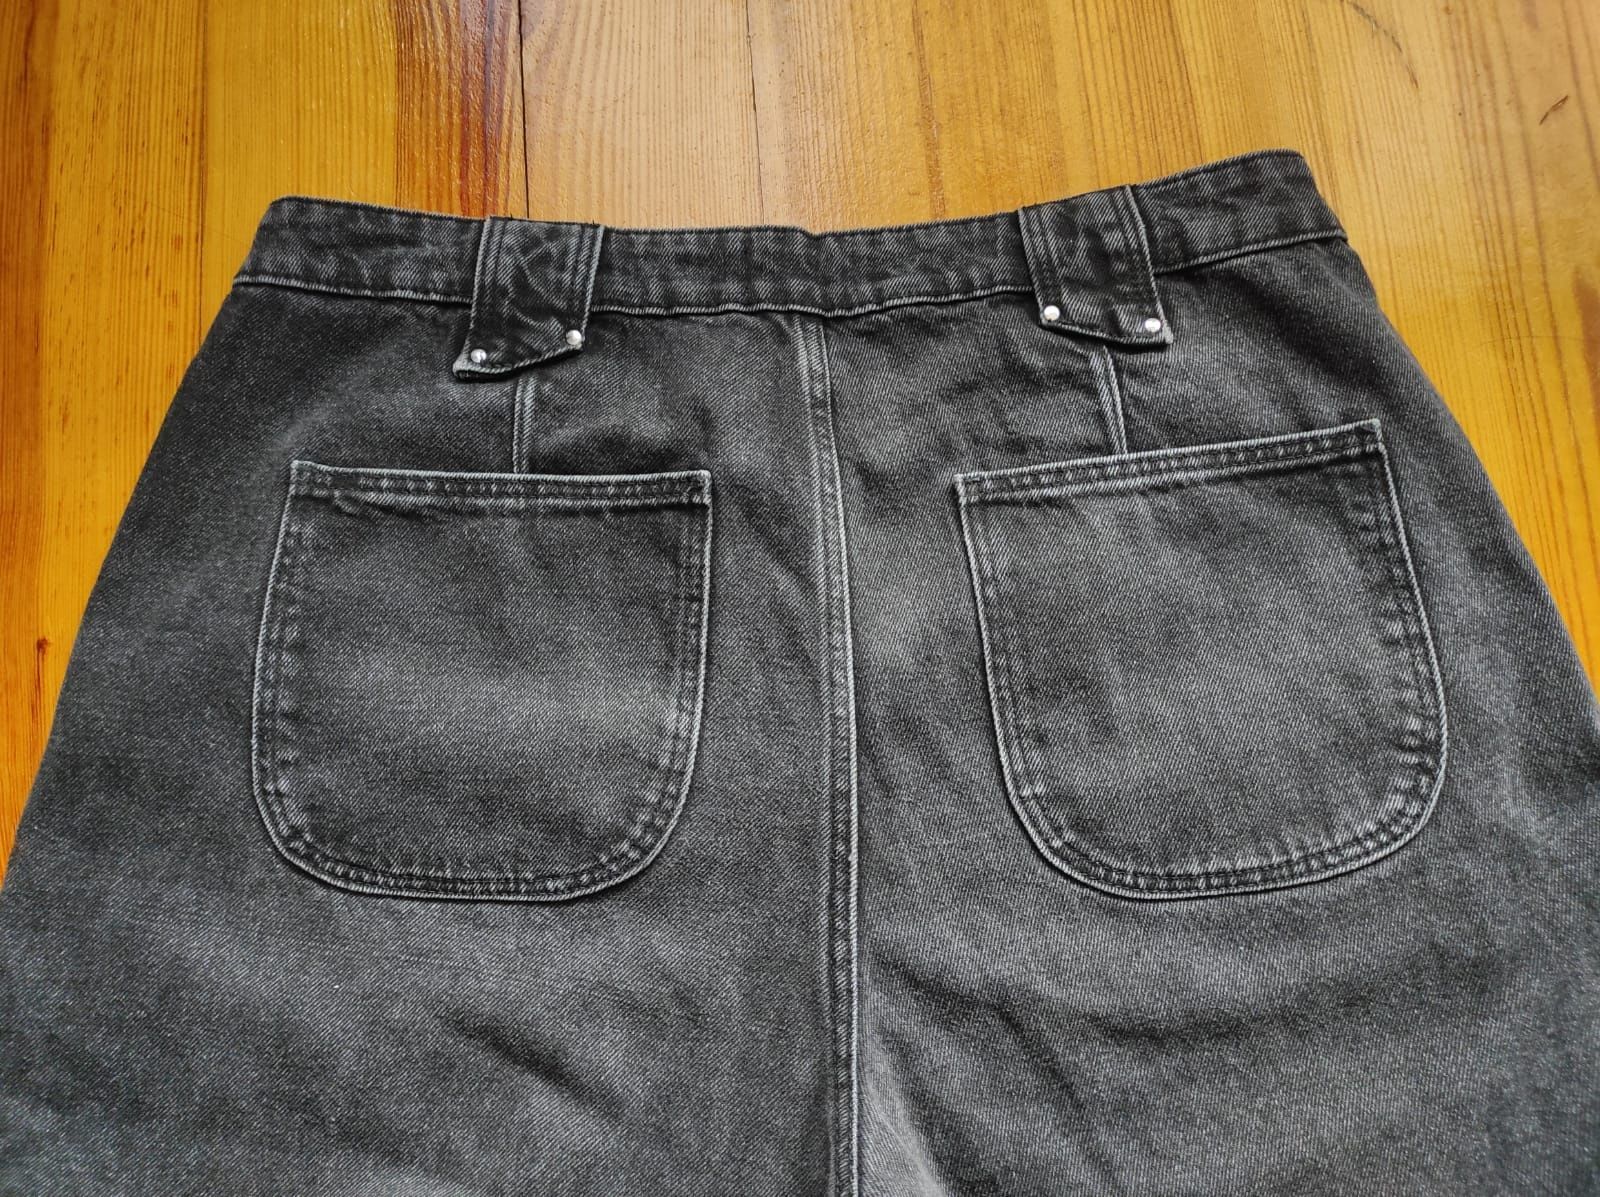 Spodnie jeansy z okrągłymi kieszeniami czarne proste nogawki straight